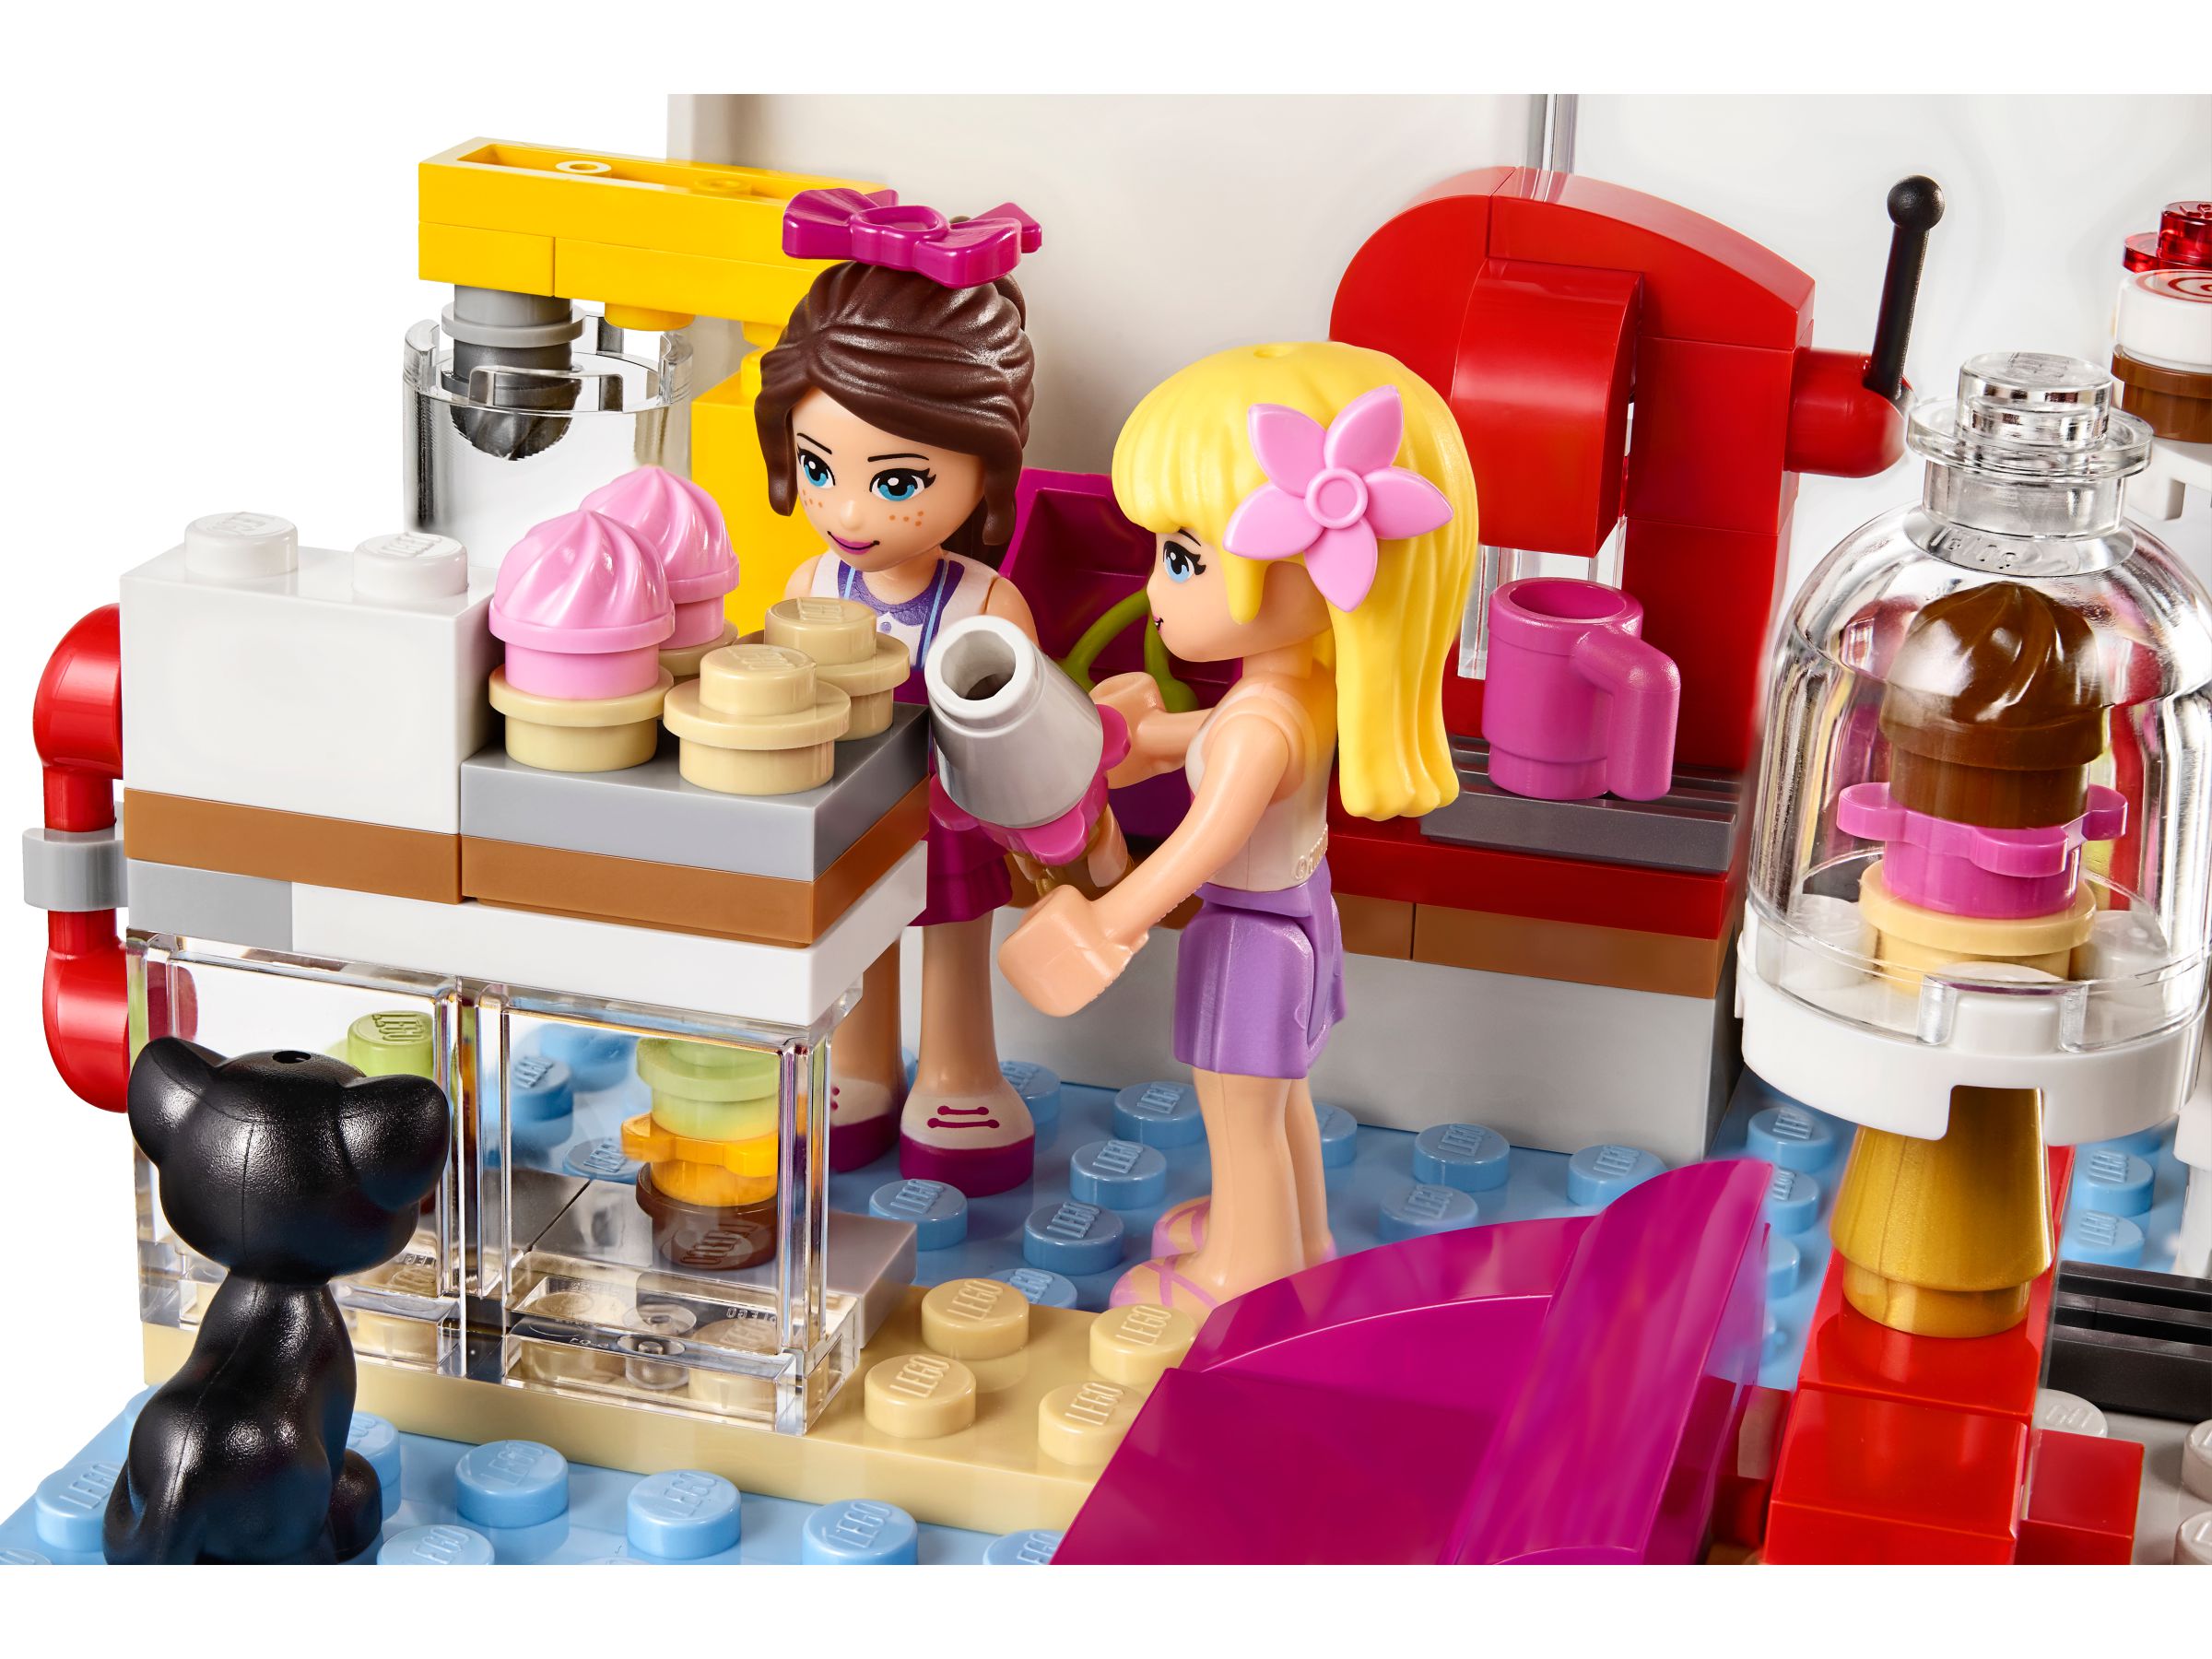 LEGO Friends 41119 Heartlake Cupcake-Café LEGO_41119_alt5.jpg